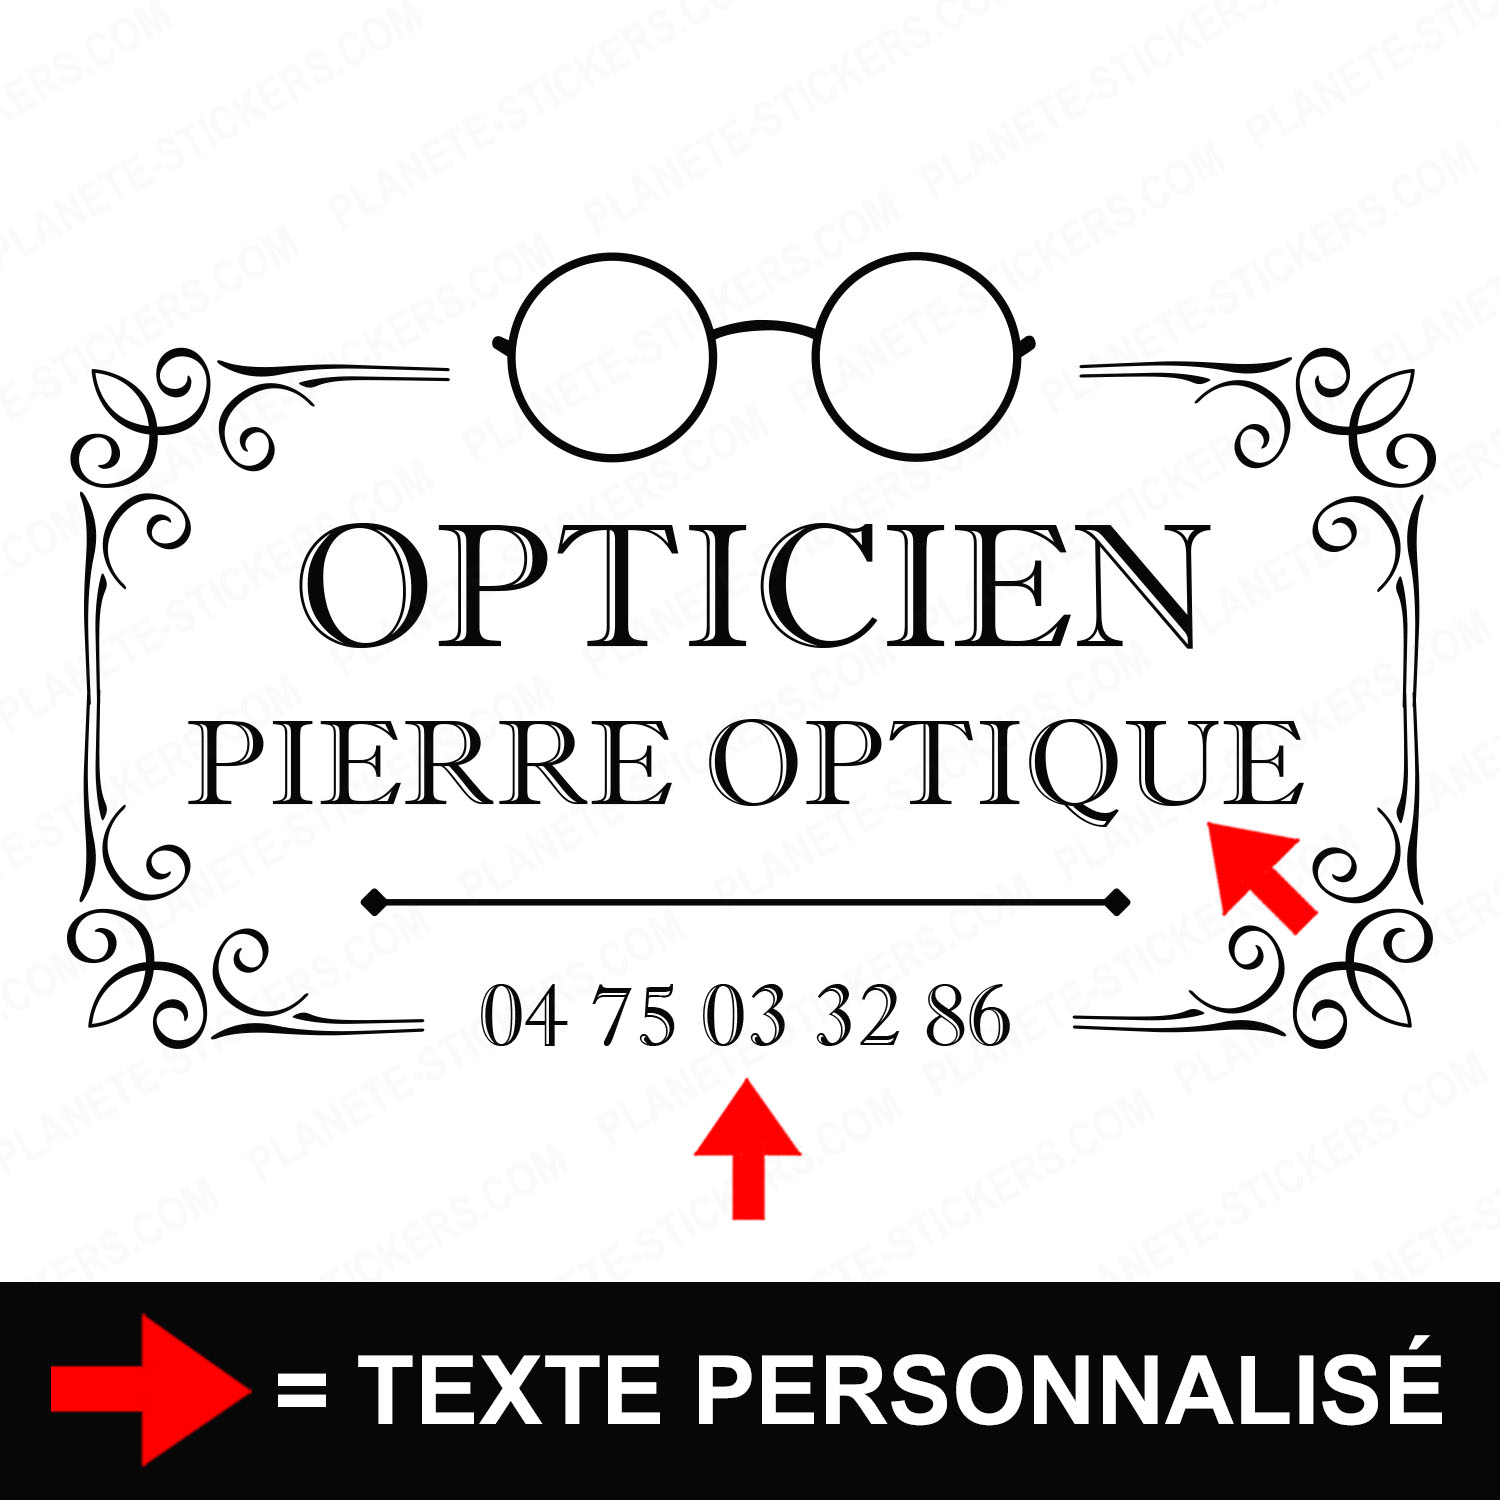 ref9opticienvitrine-stickers-opticien-vitrine-optique-sticker-personnalisé-lunetier-autocollant-pro-opticiens-vitre-magasin-boutique-logo-lunettes-arabesques-2